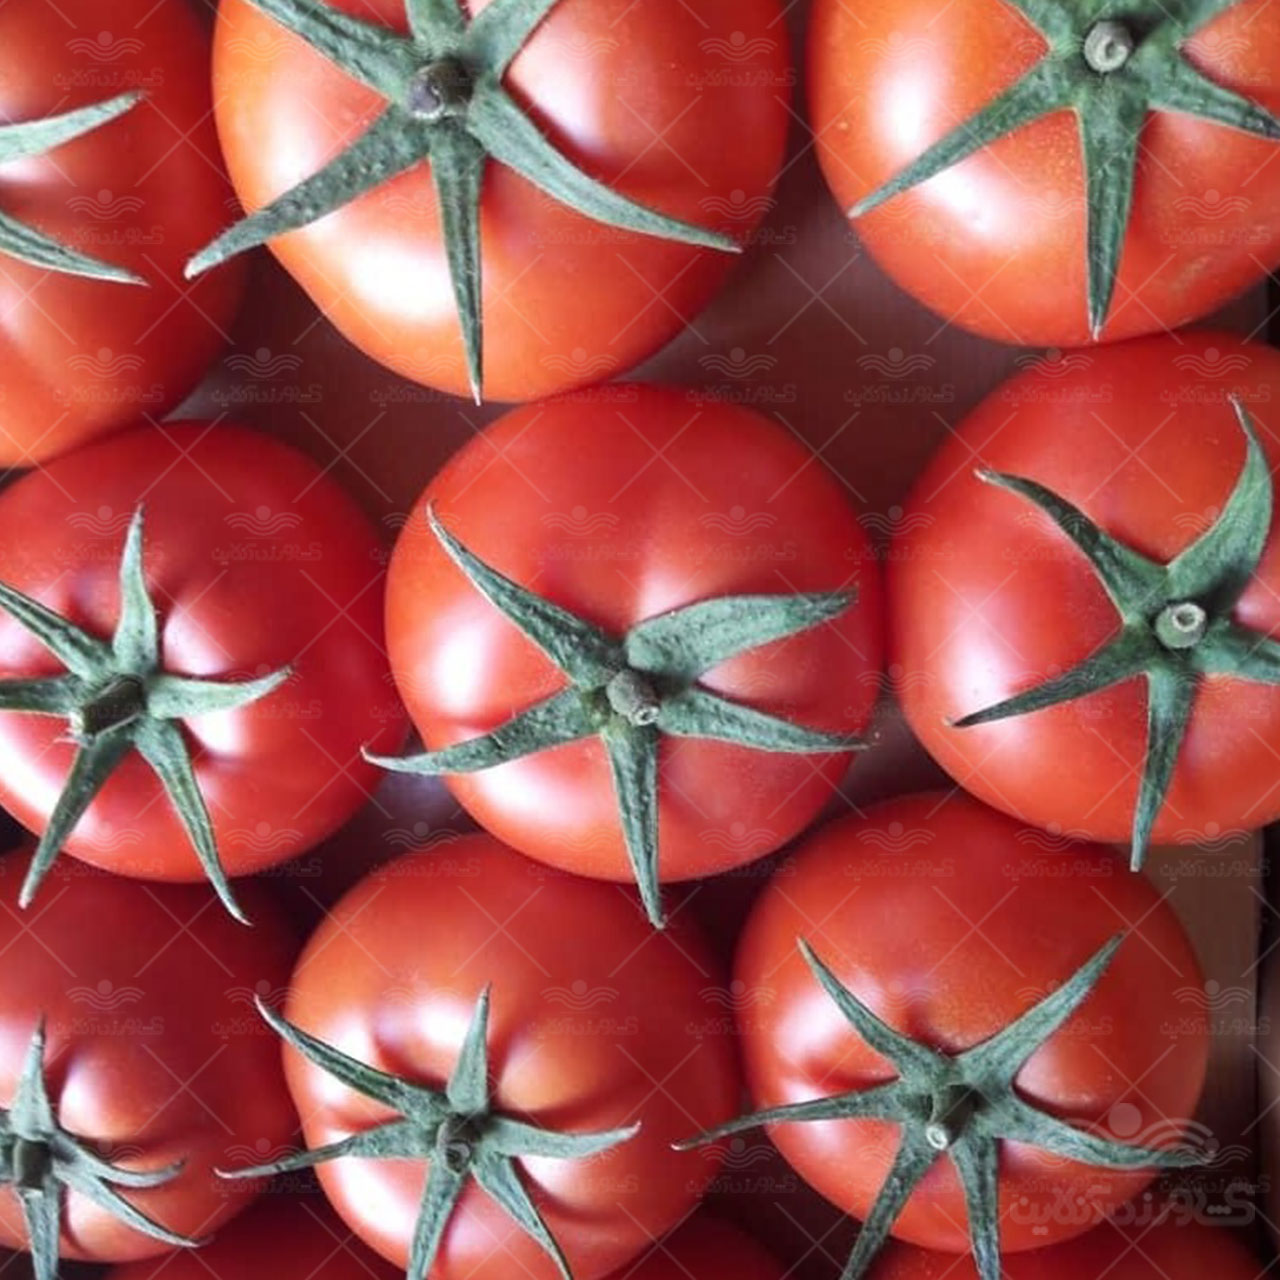 بذر گوجه فرنگی گلخانه ای والنسیا کاملا مشابه و جایگزین دافنیس 3